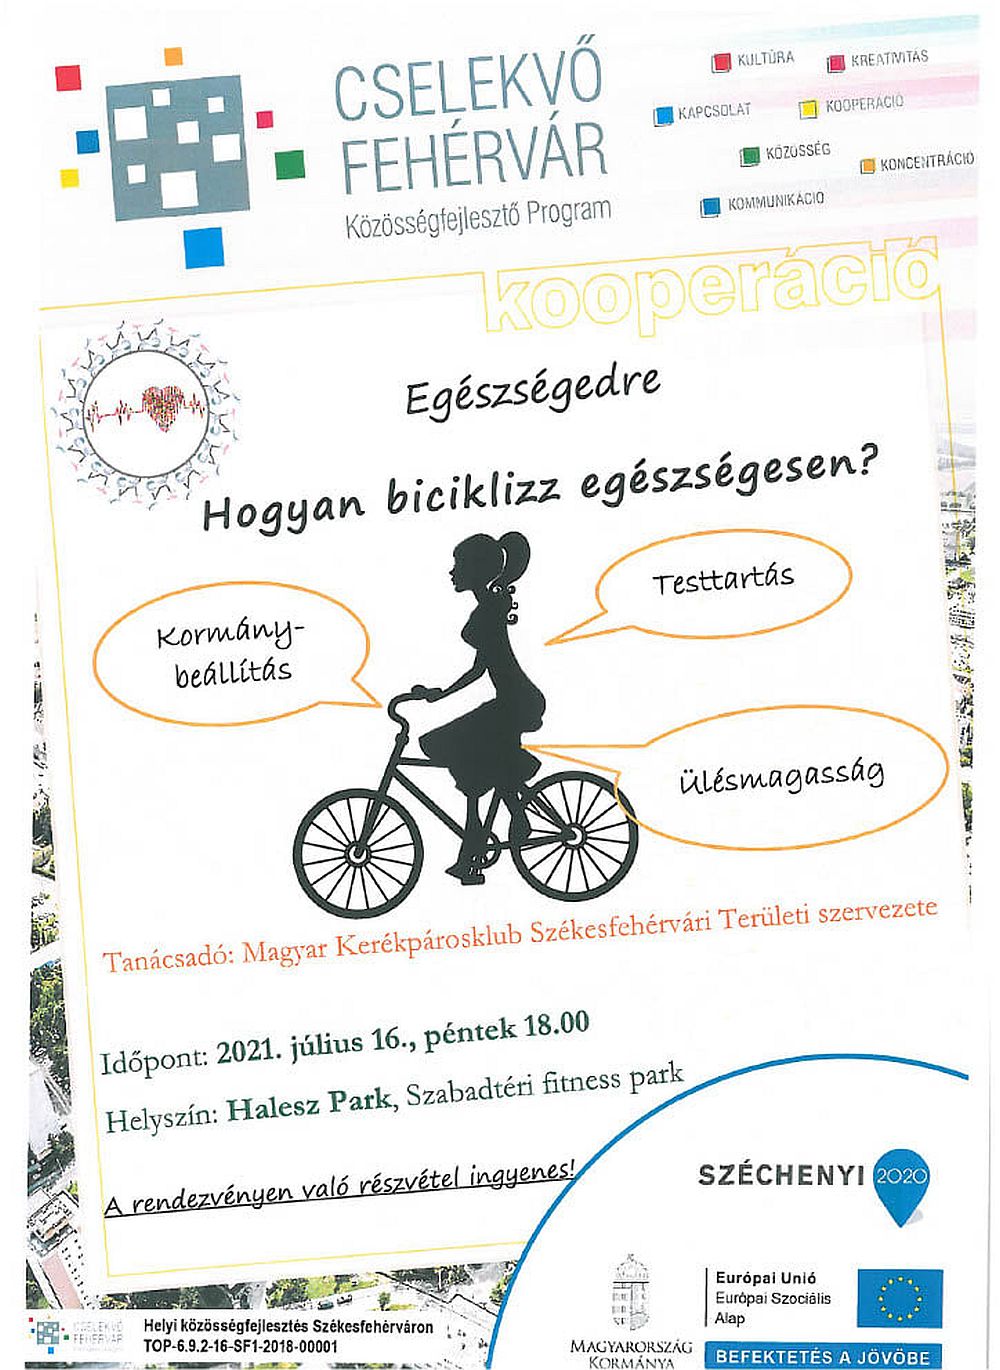 Hogyan biciklizz egészségesen? – ingyenes tanácsadó program pénteken a Haleszban